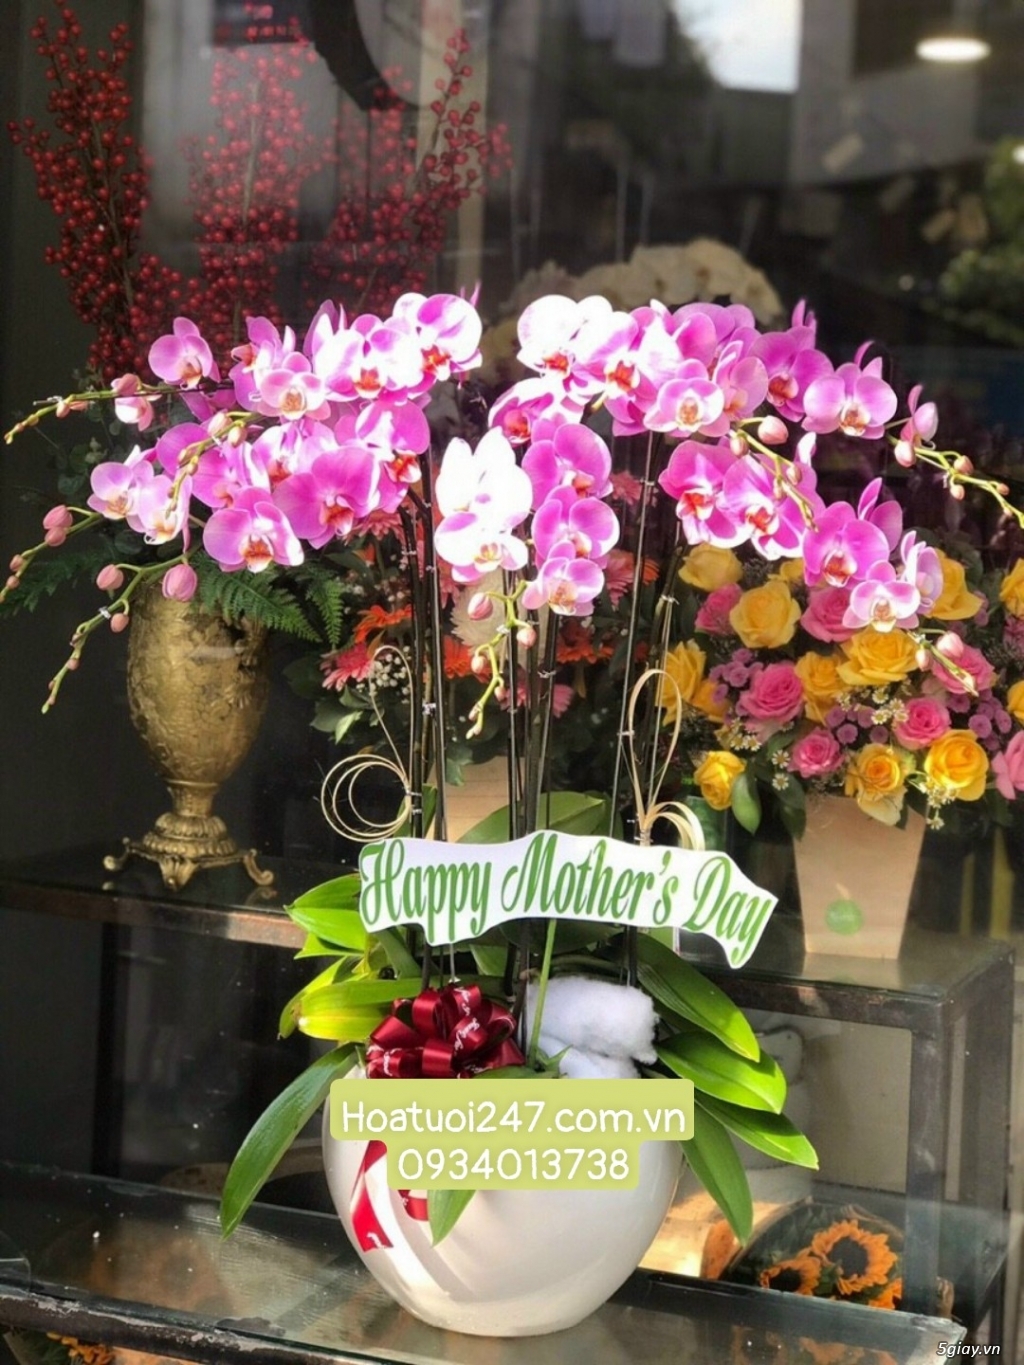 Shop hoa tươi Lan Hồ Điệp uy tín chất lượng số 1 Sài Gòn 0934013738 - 3